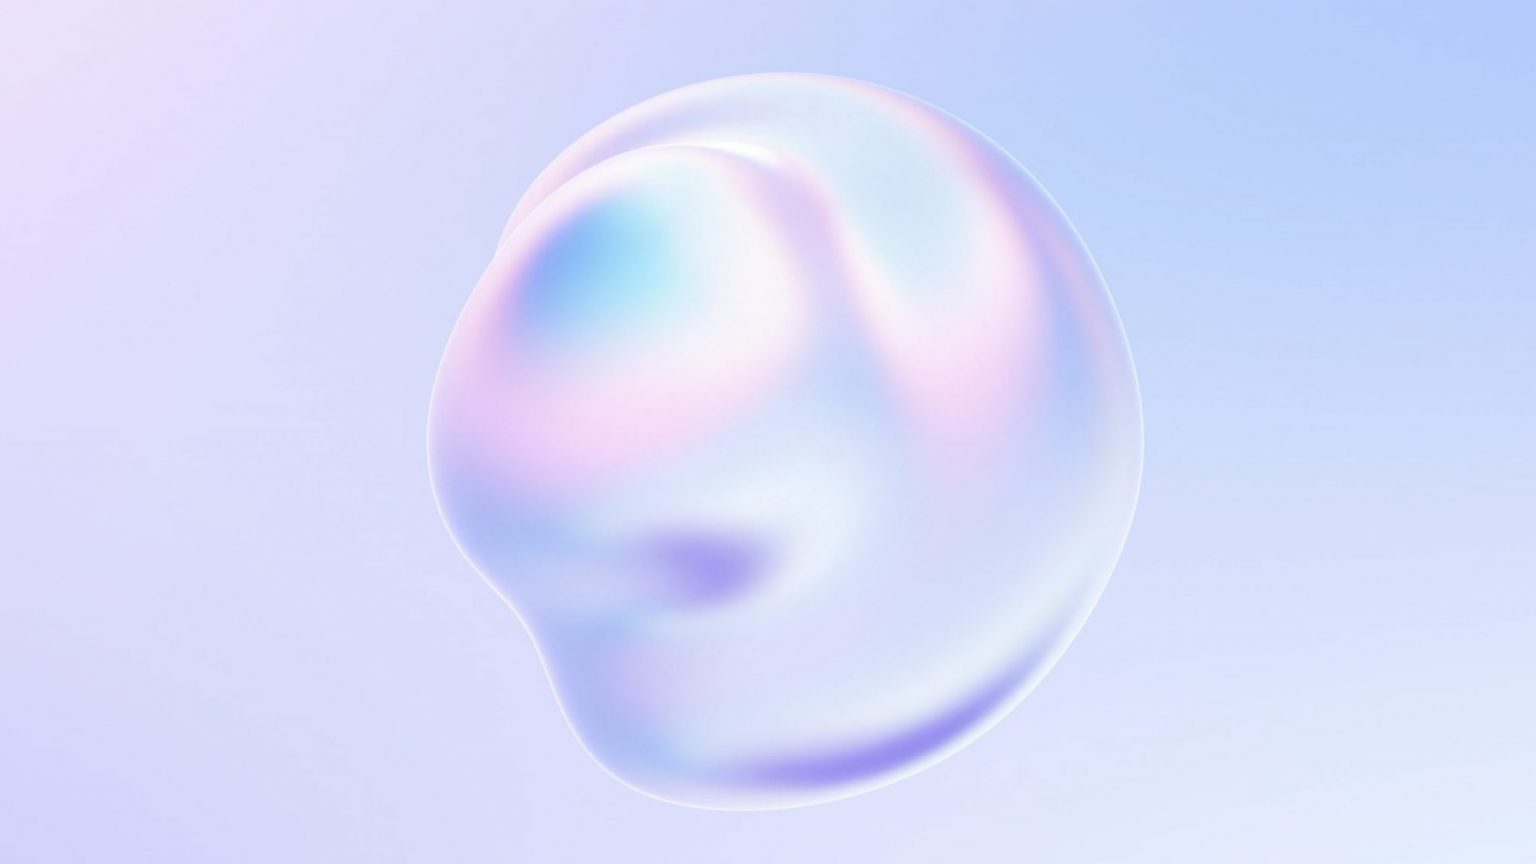 Bubble workshop